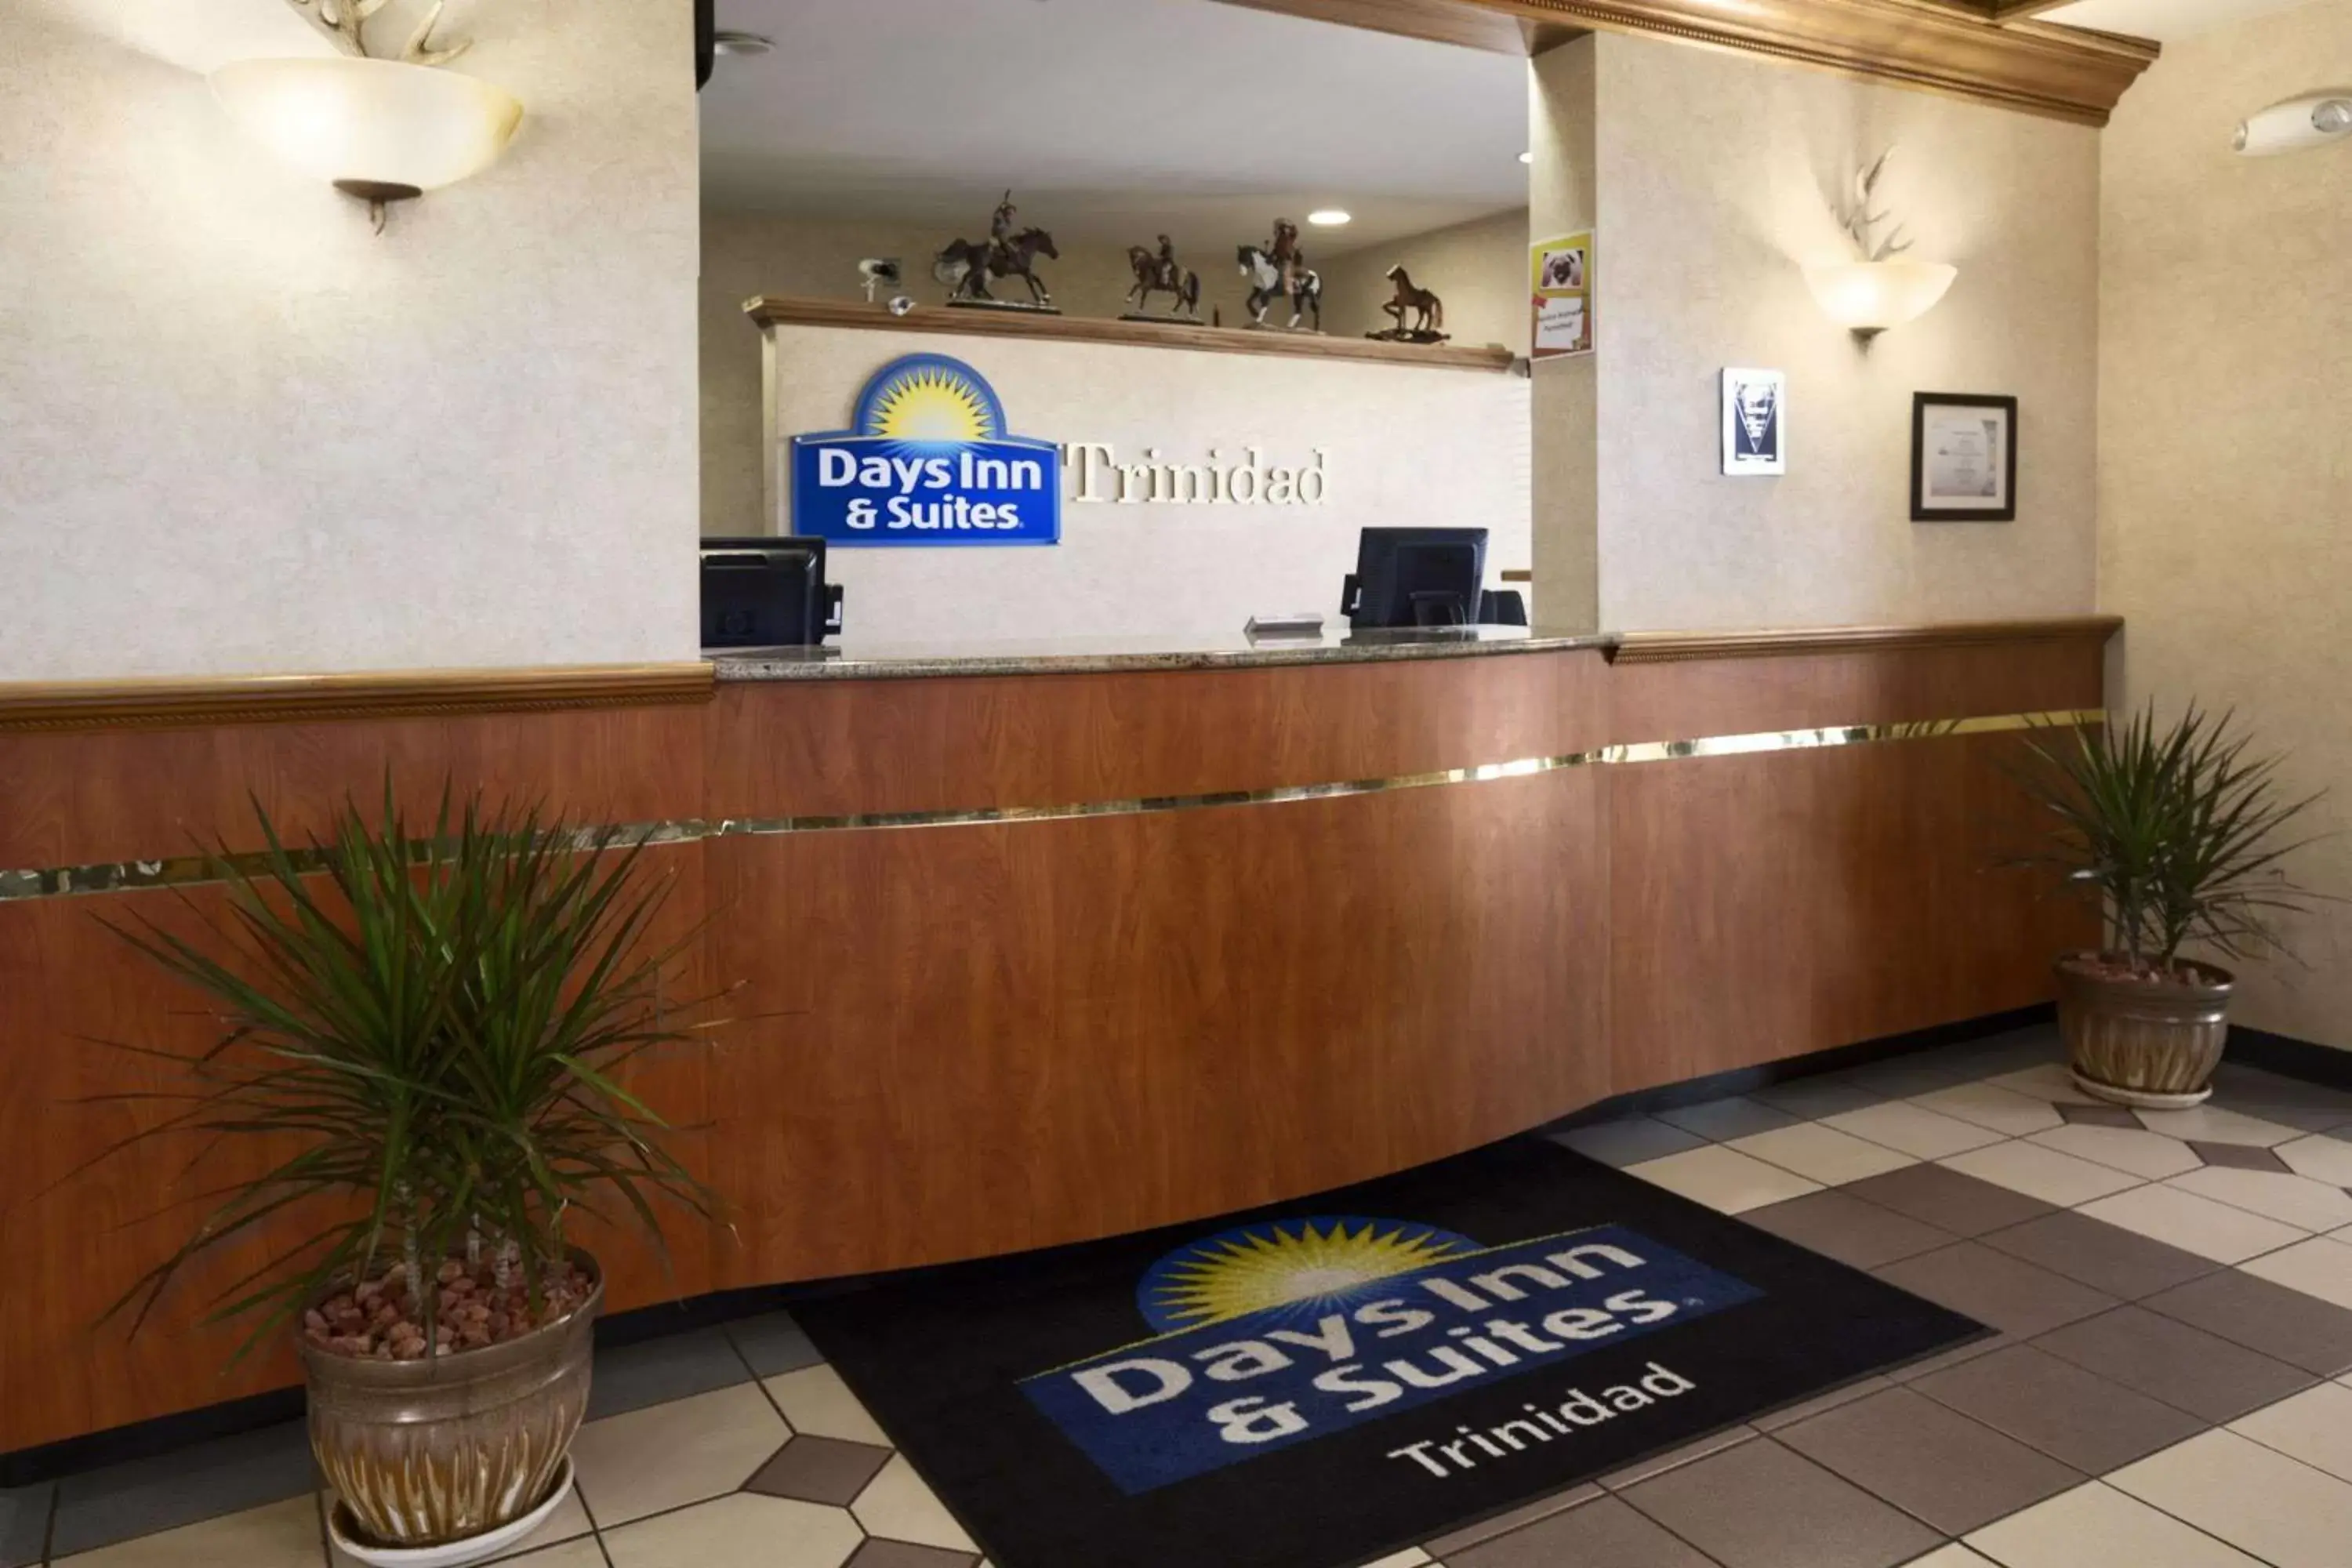 Lobby or reception, Lobby/Reception in Days Inn & Suites by Wyndham Trinidad